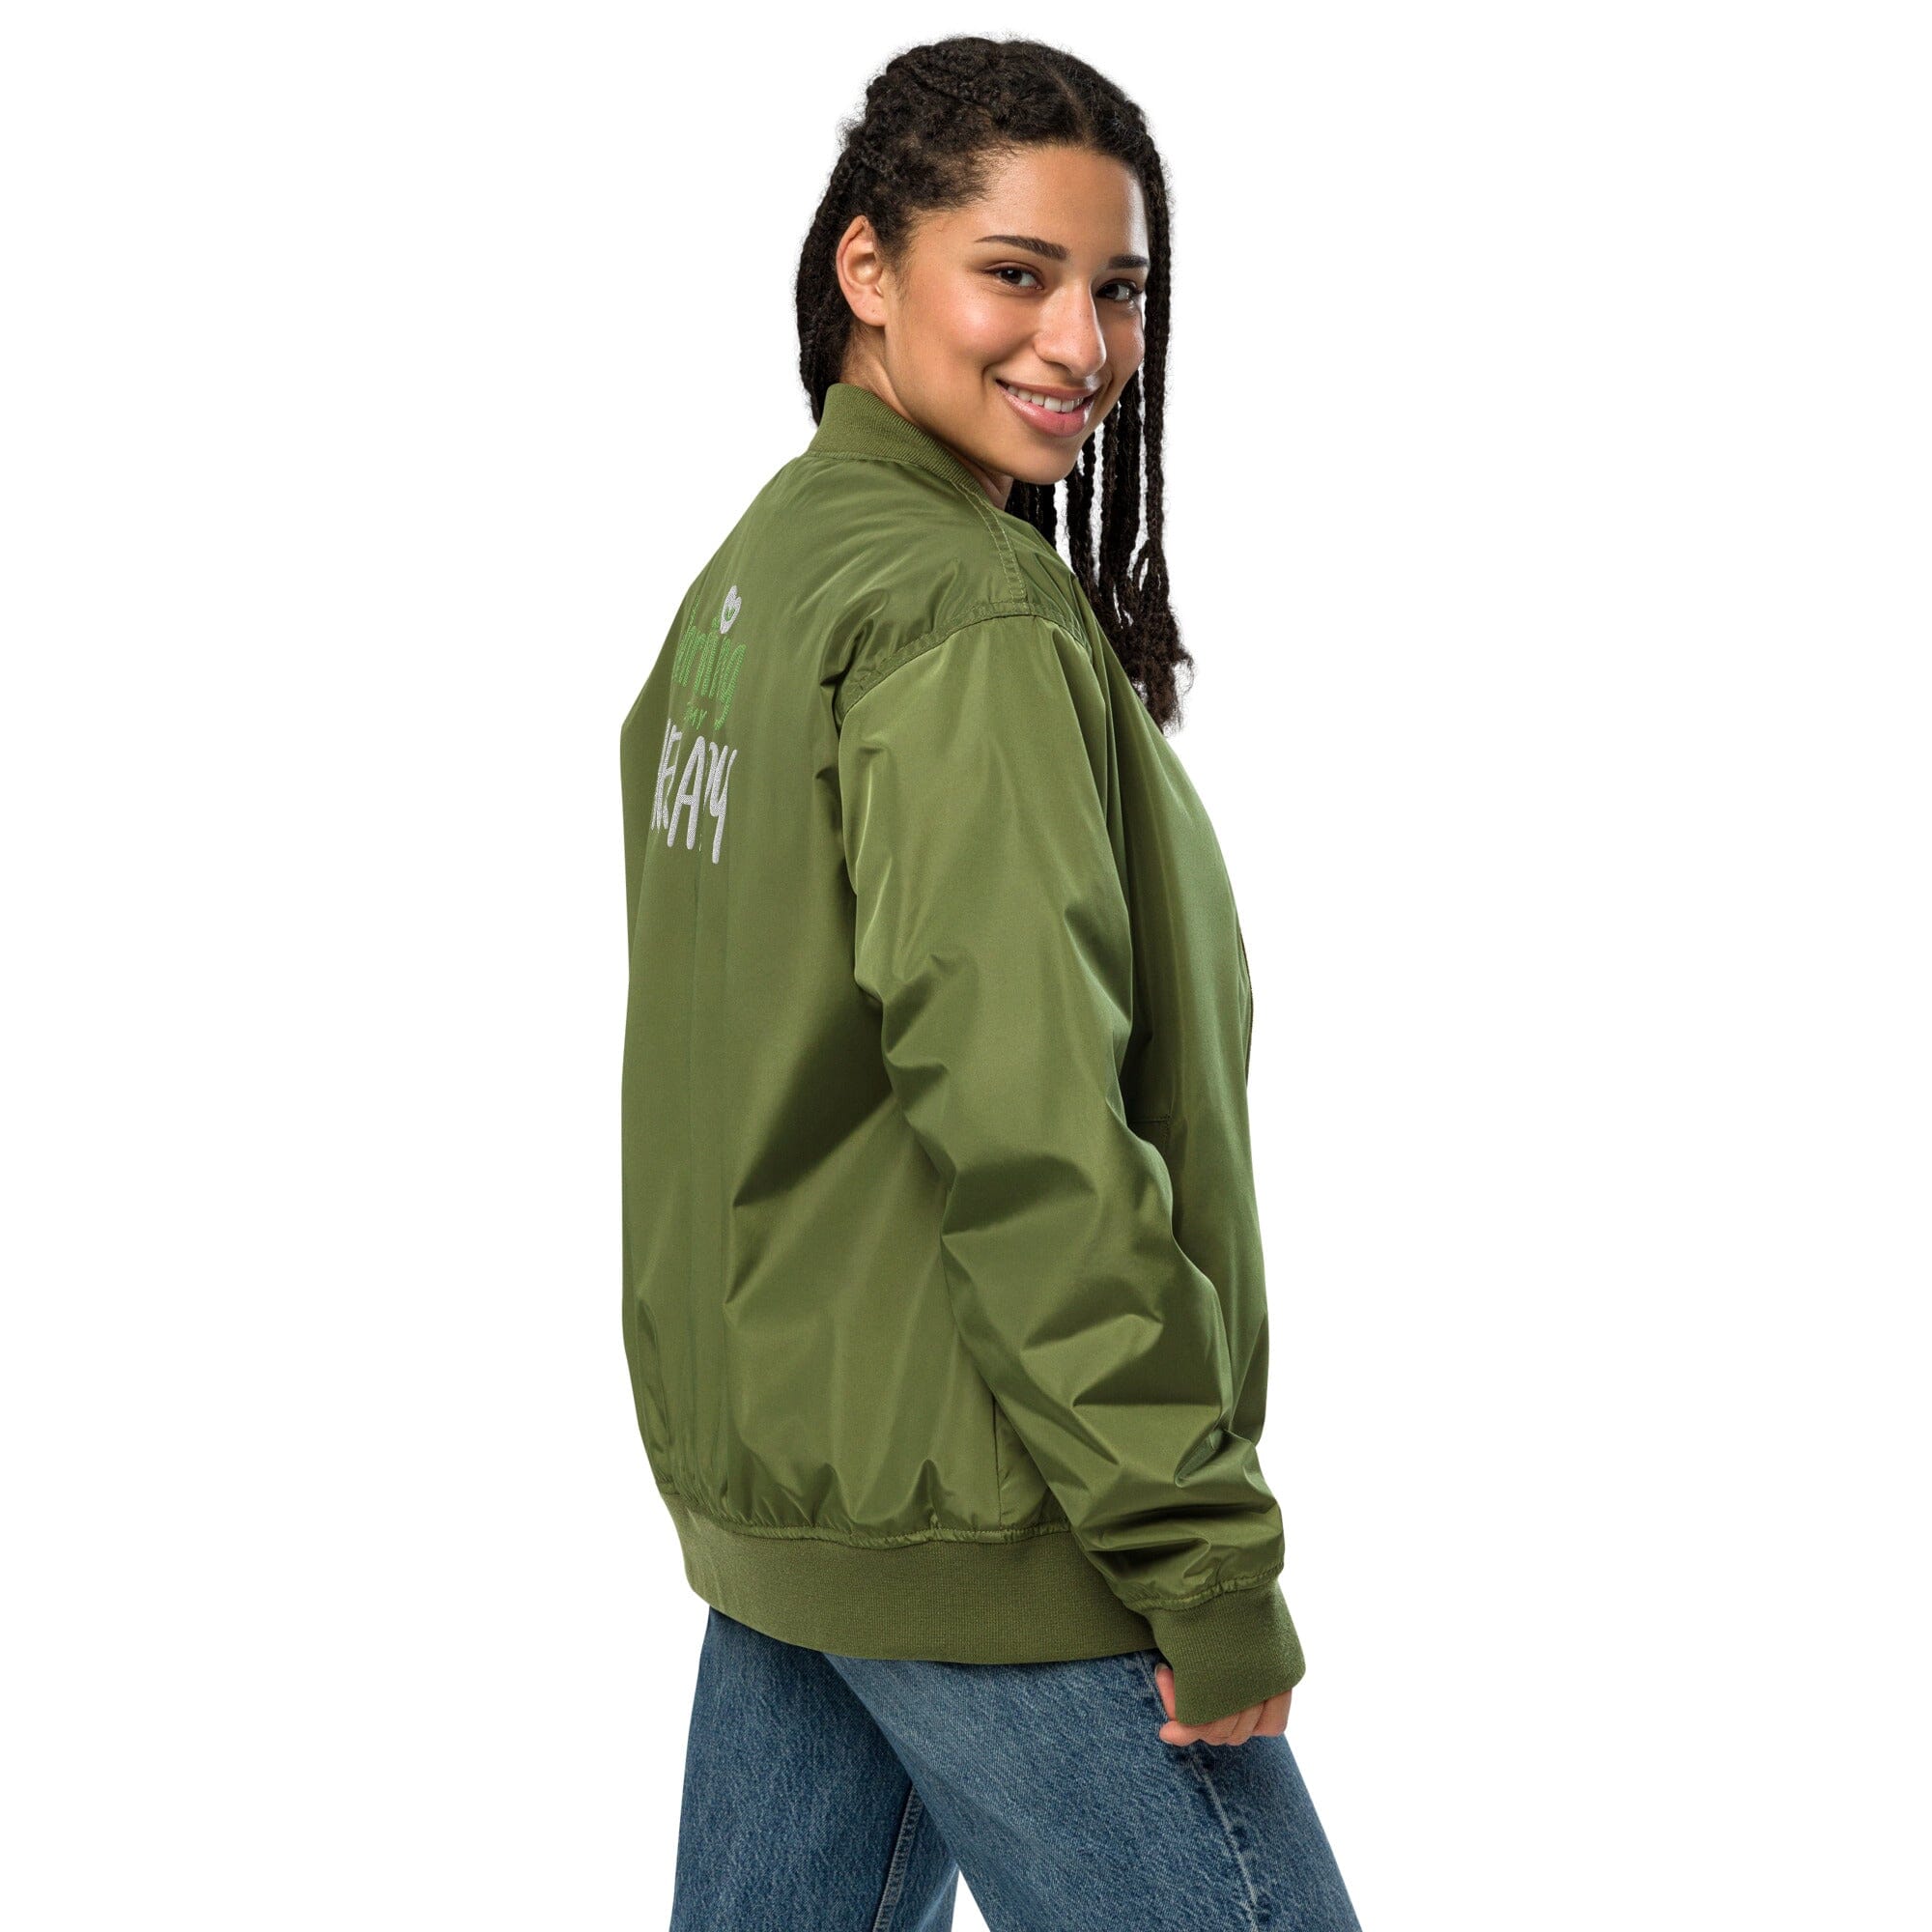 Recycled bomber jacket Coats & Jackets Lara Dee Artistry